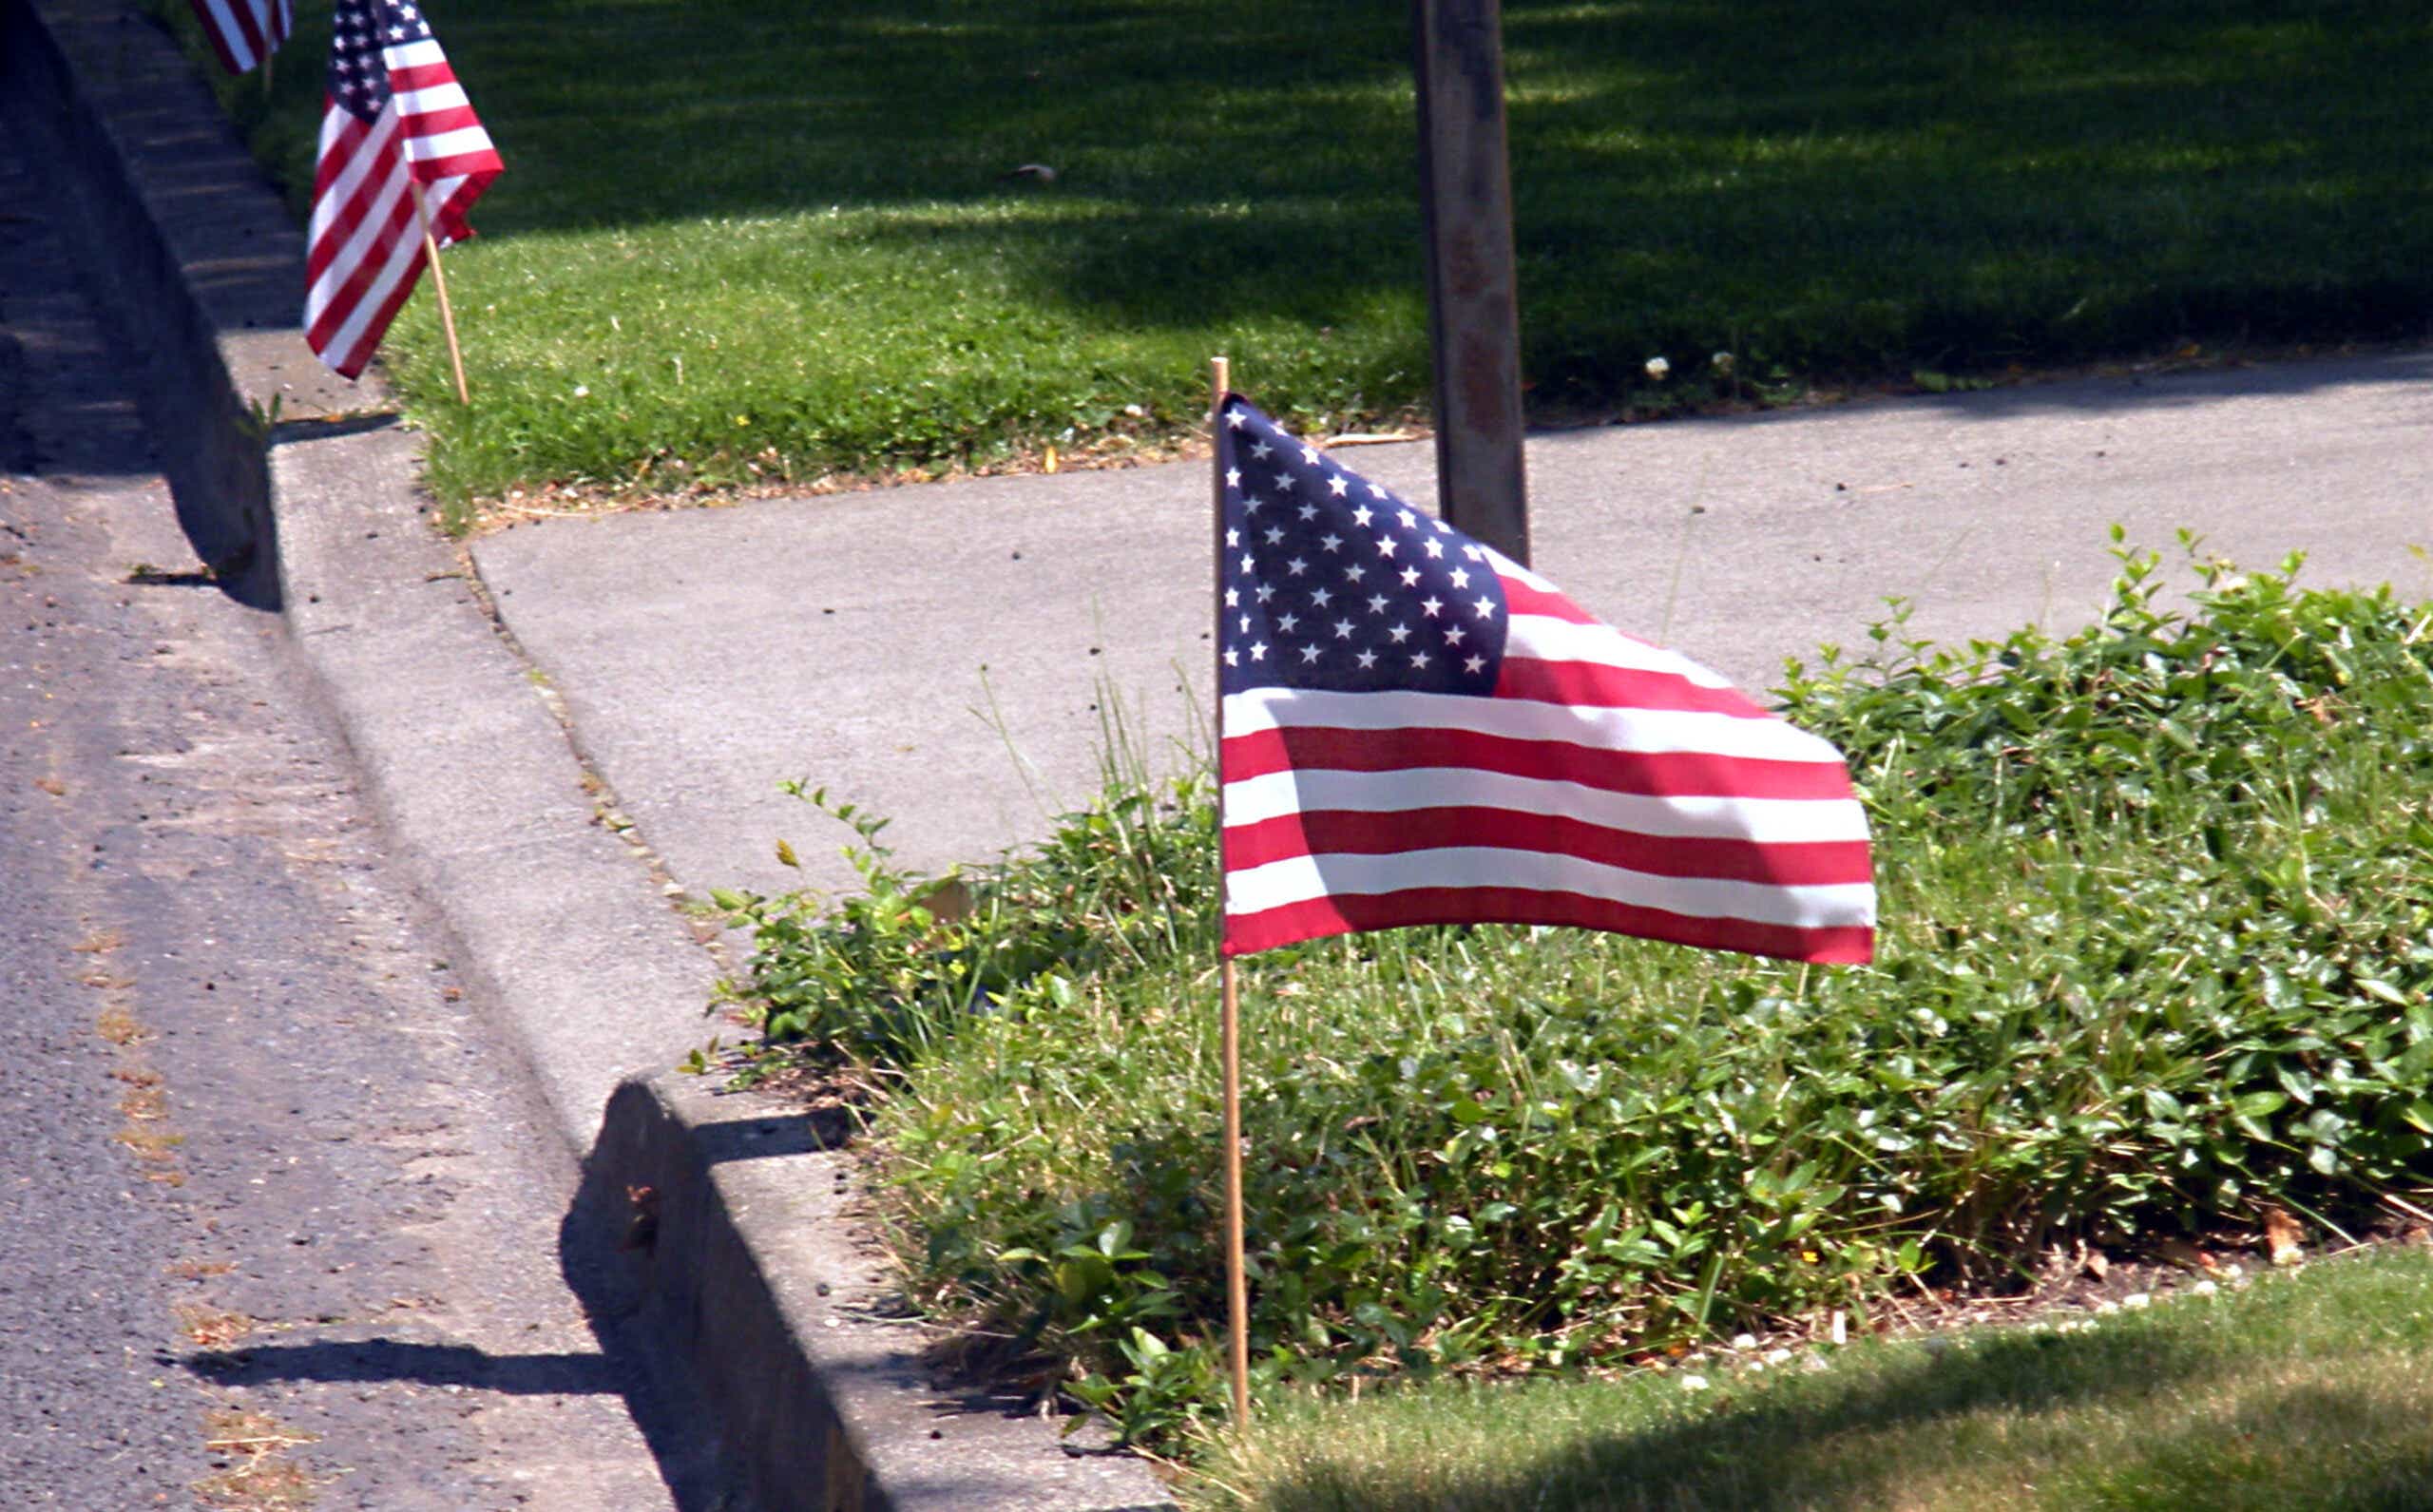 American flag on lawn